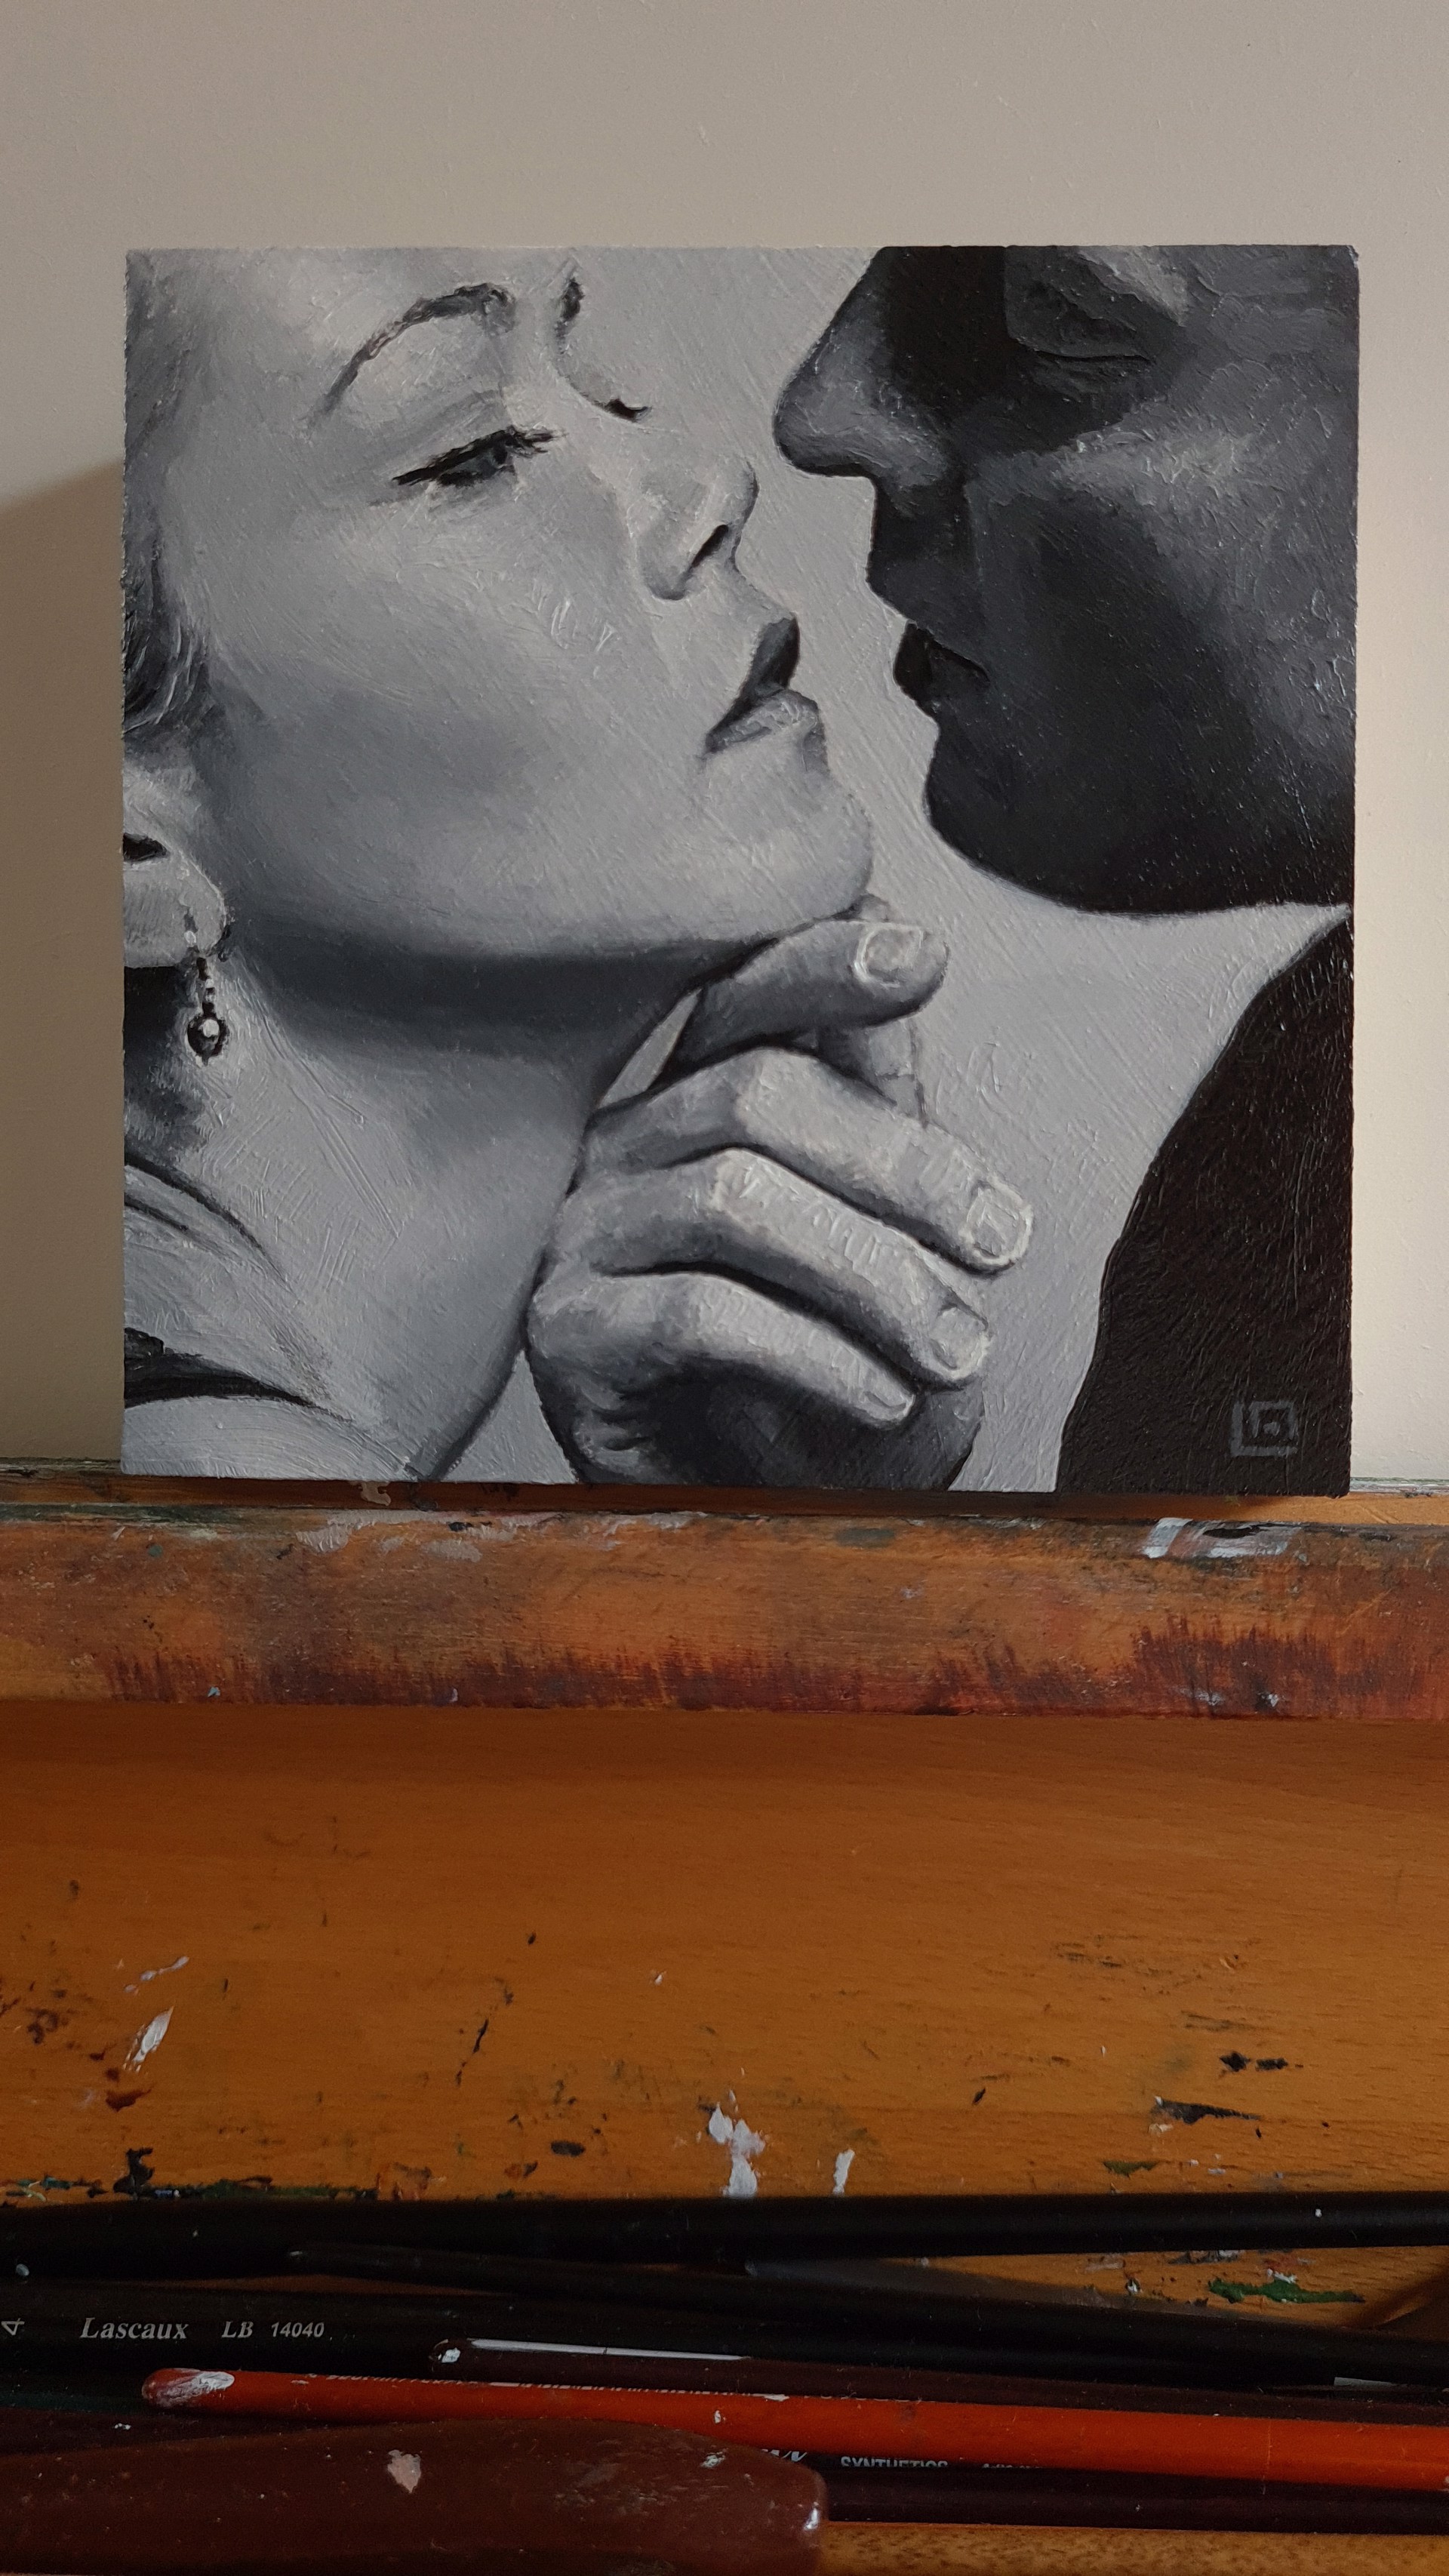 The Kiss #5 by Linda Adair